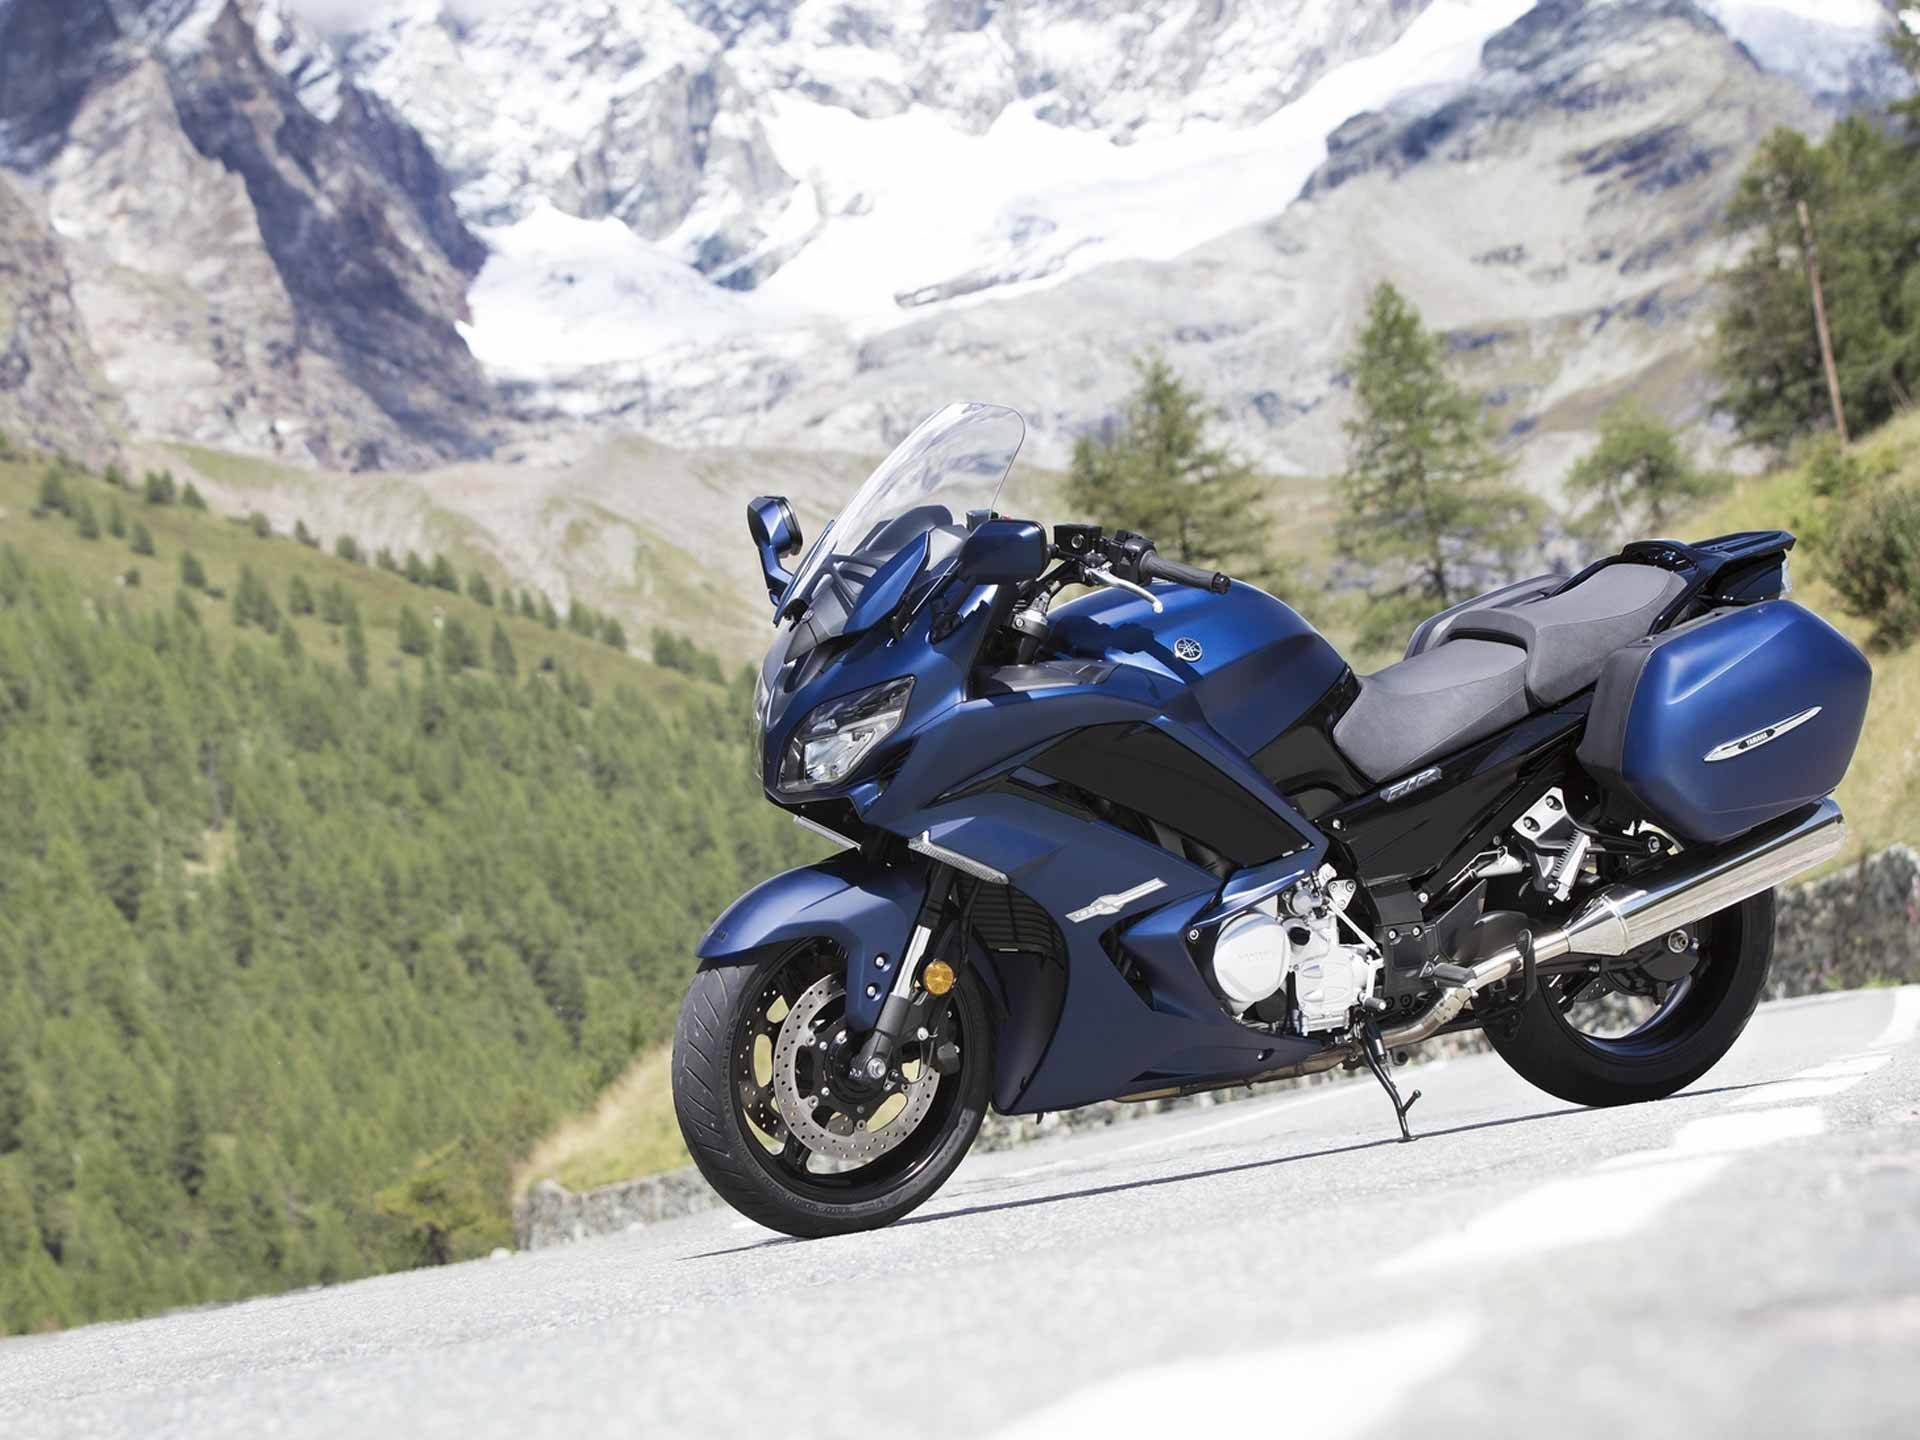 Yamaha FJR1300, Auto expert, Touring motorcycle, Long-distance riding, 1920x1440 HD Desktop